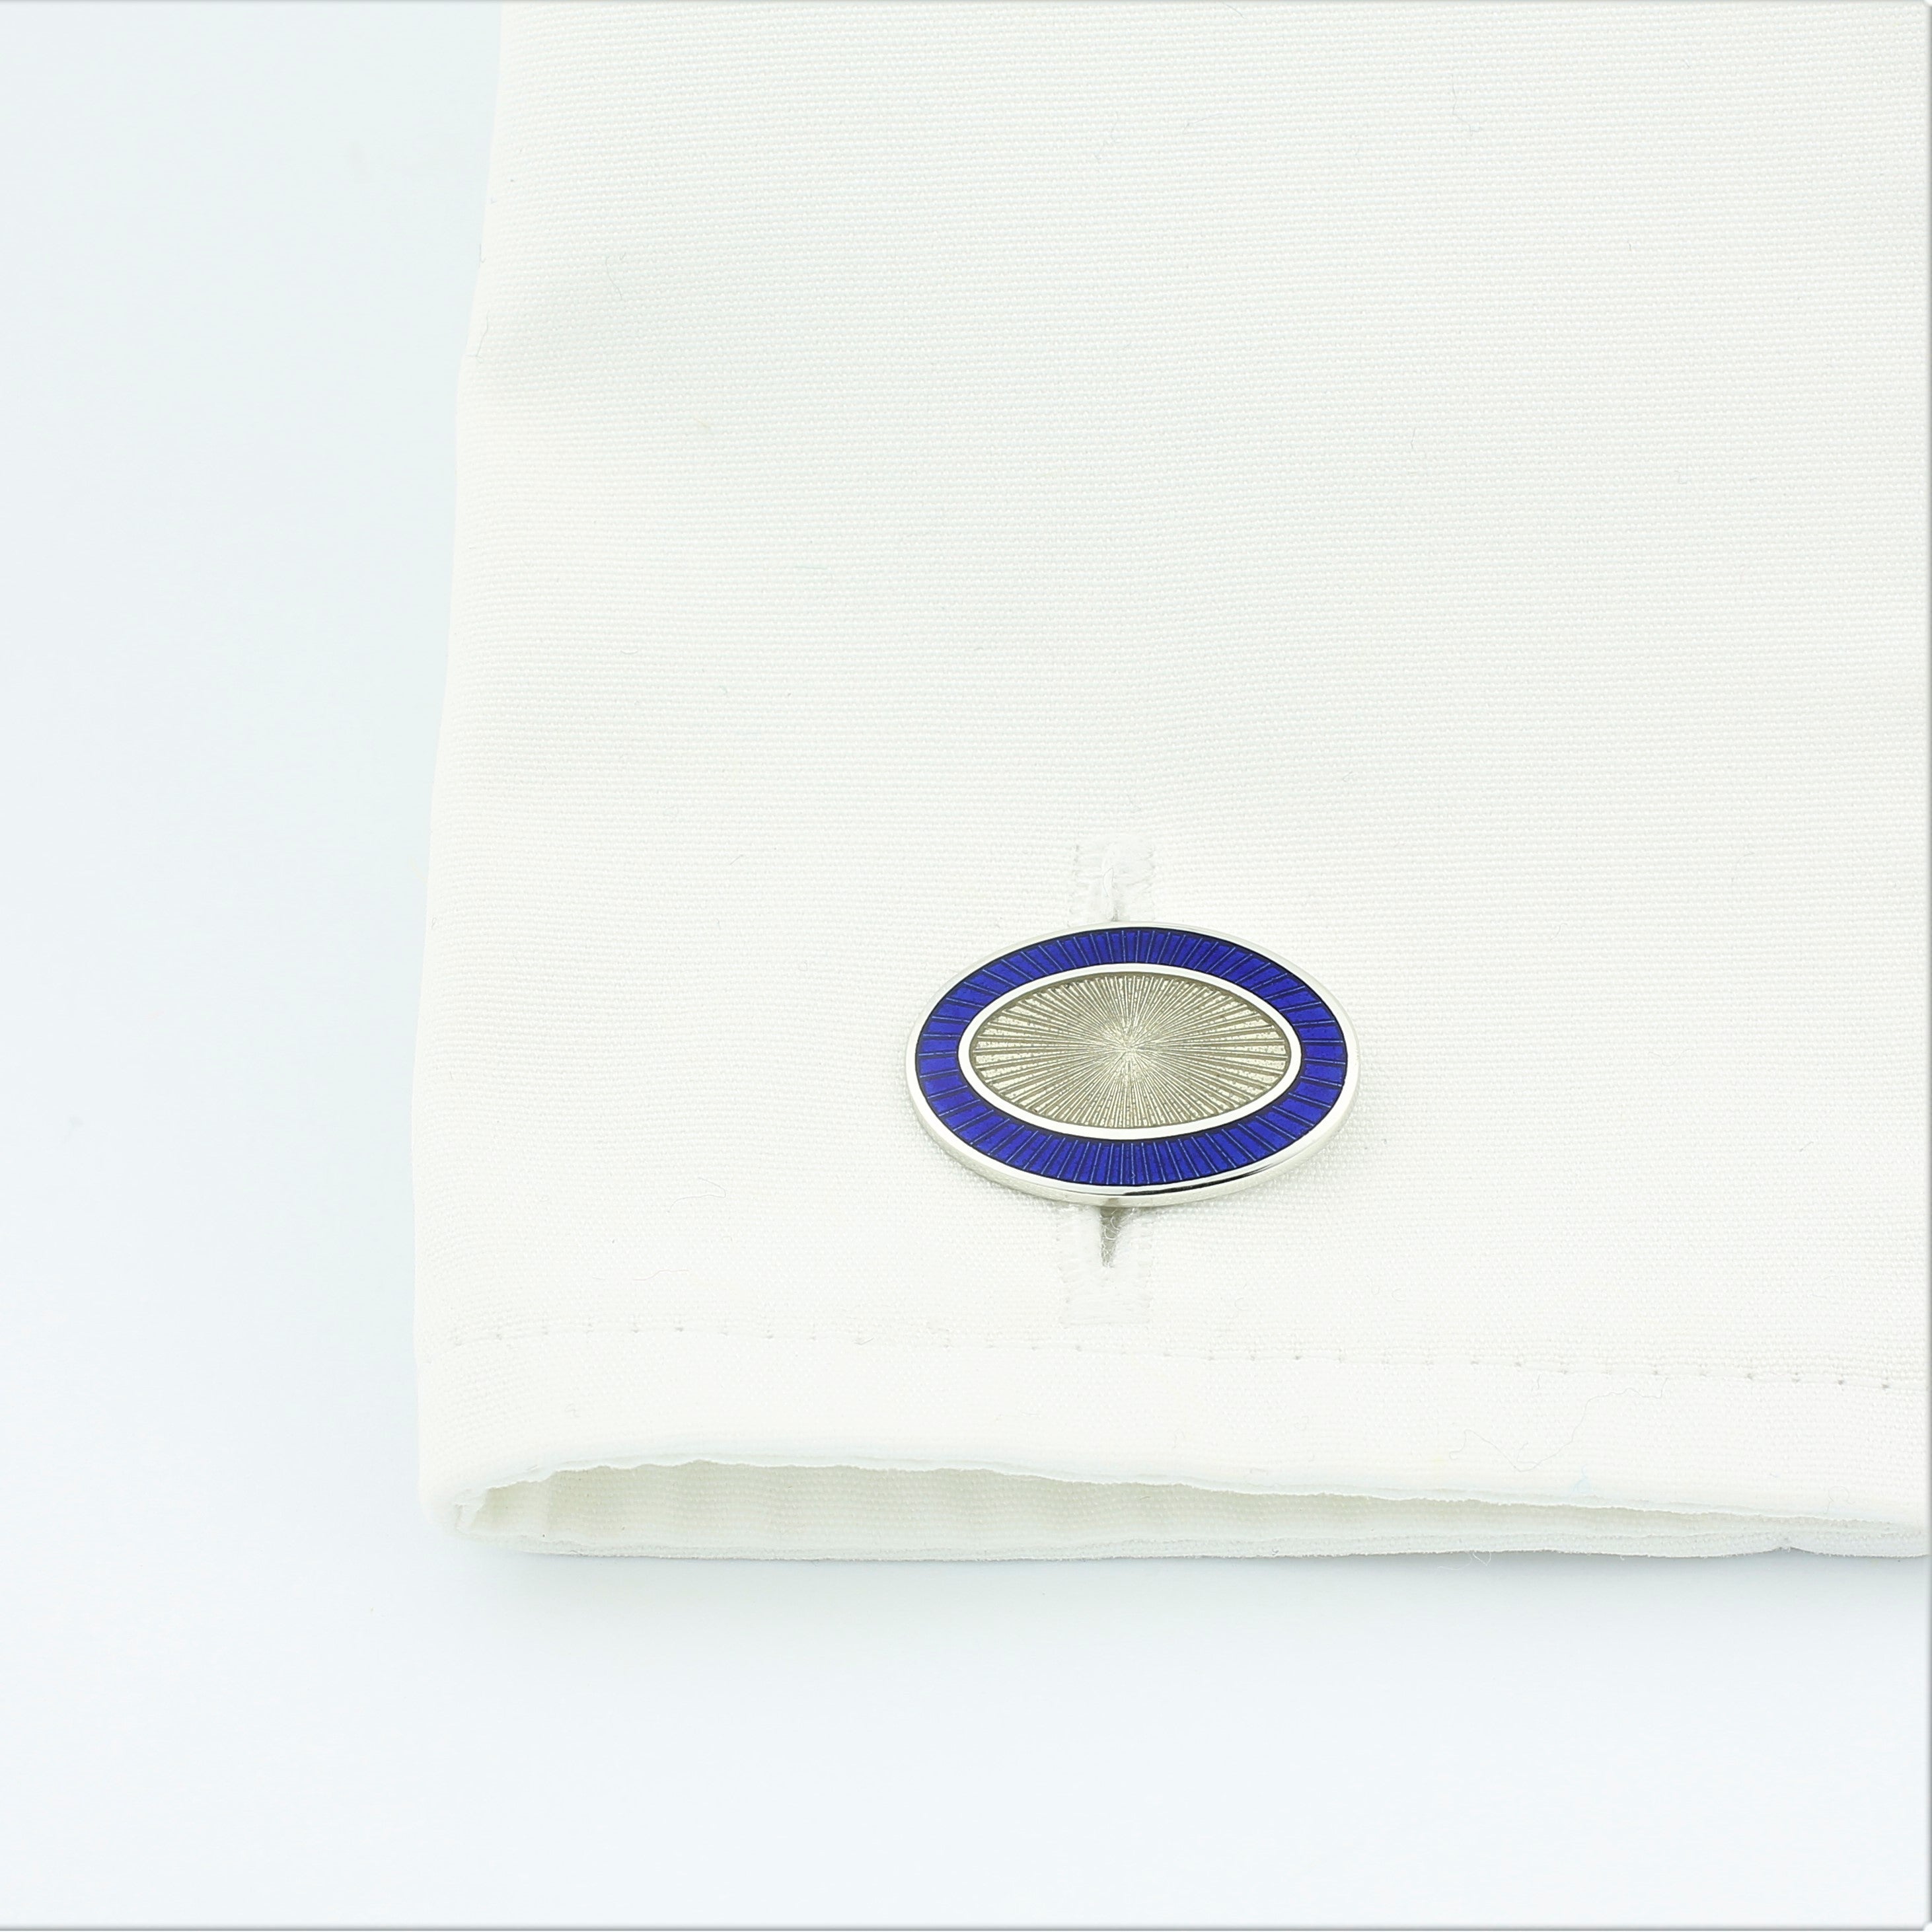 Double Oval Blue/Trans enamel cufflinks in 18k white gold in a cuff